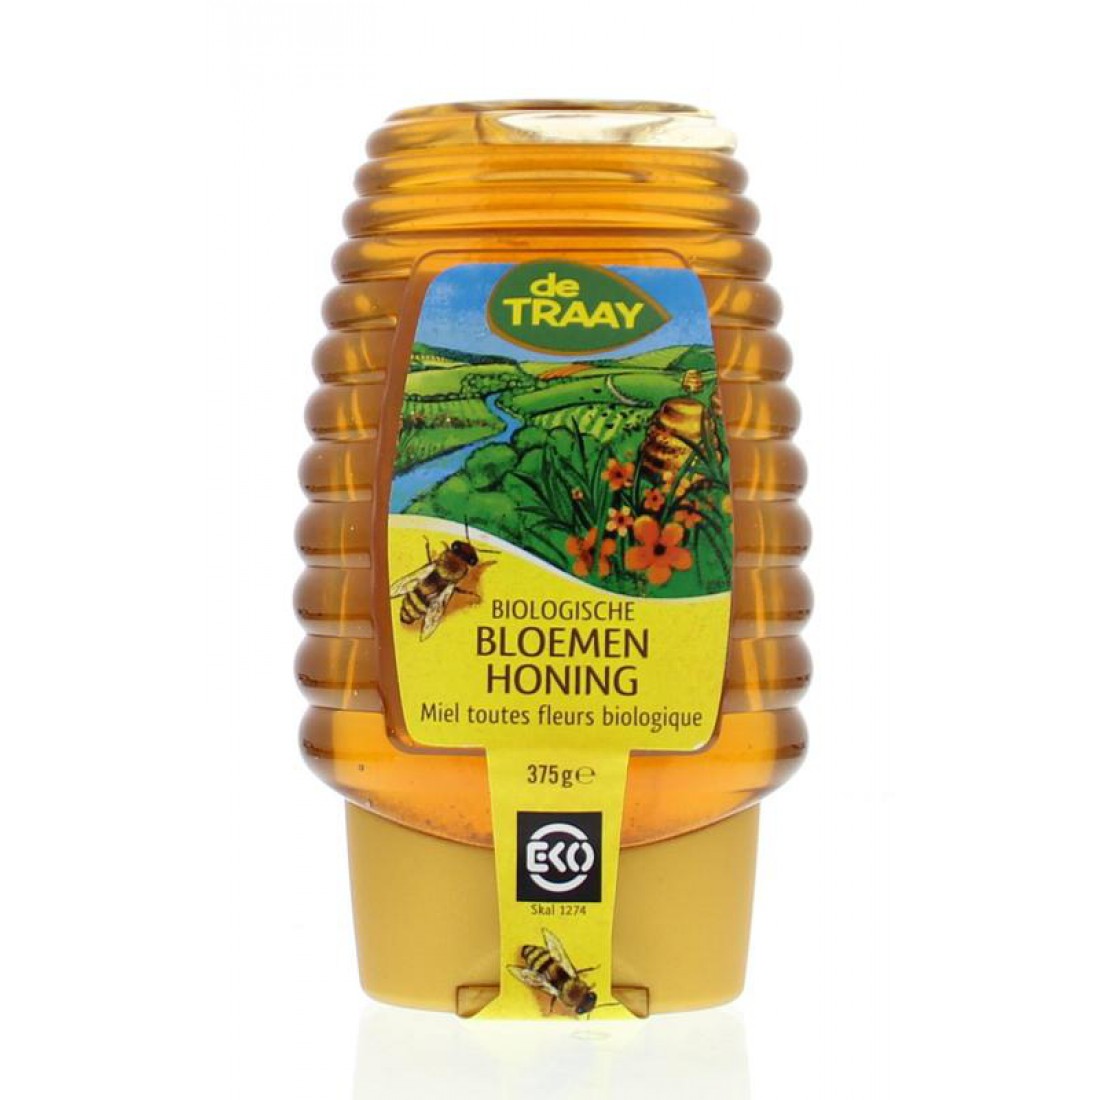 verkoudheid over het algemeen Buitenlander Biologische honing kopen? - Bas Boer Noten